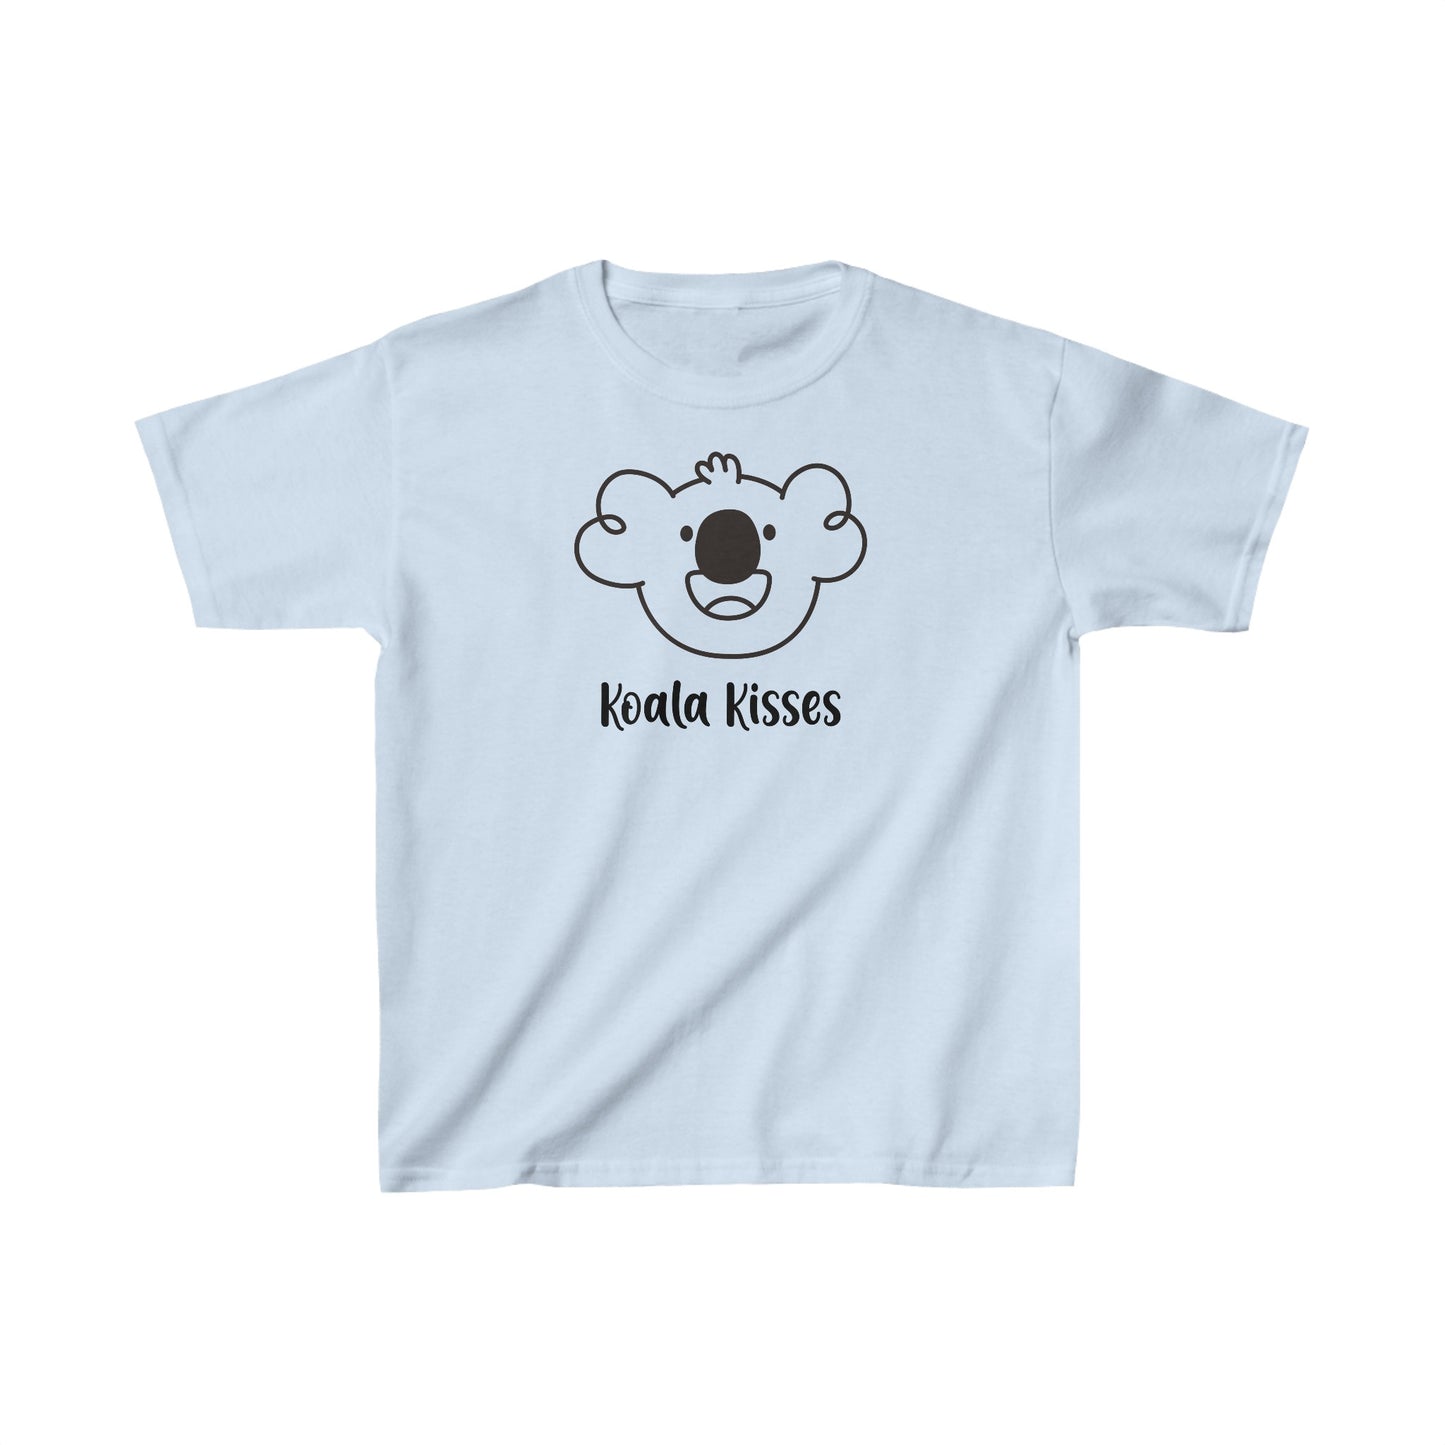 Tyler's Koala Kisses Kid's T-shirt - Bright Color